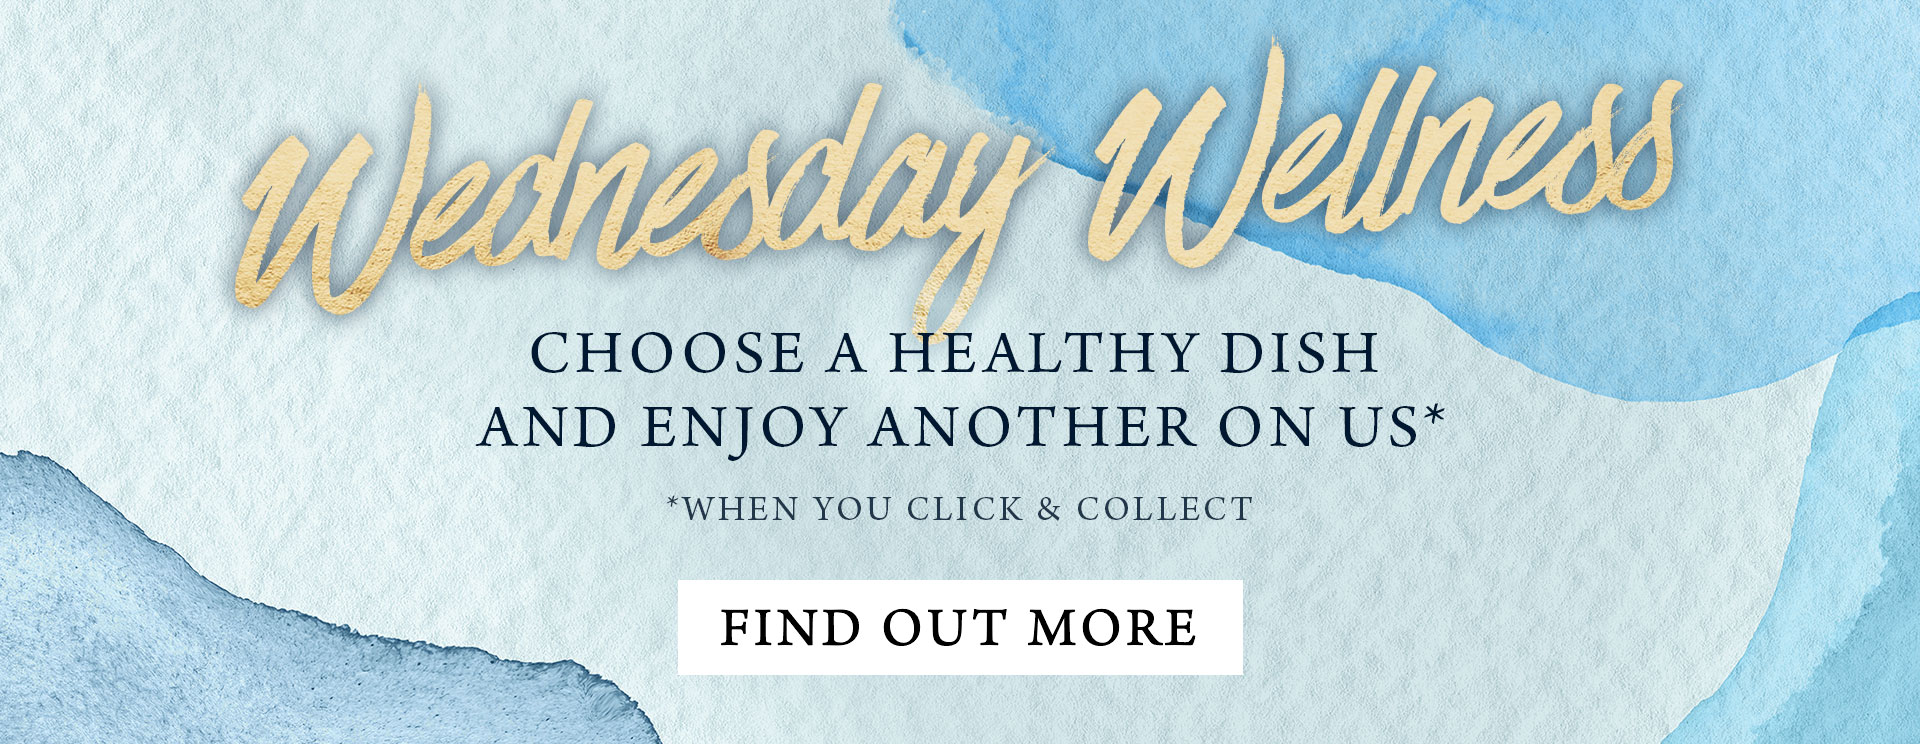 Wednesday Wellness